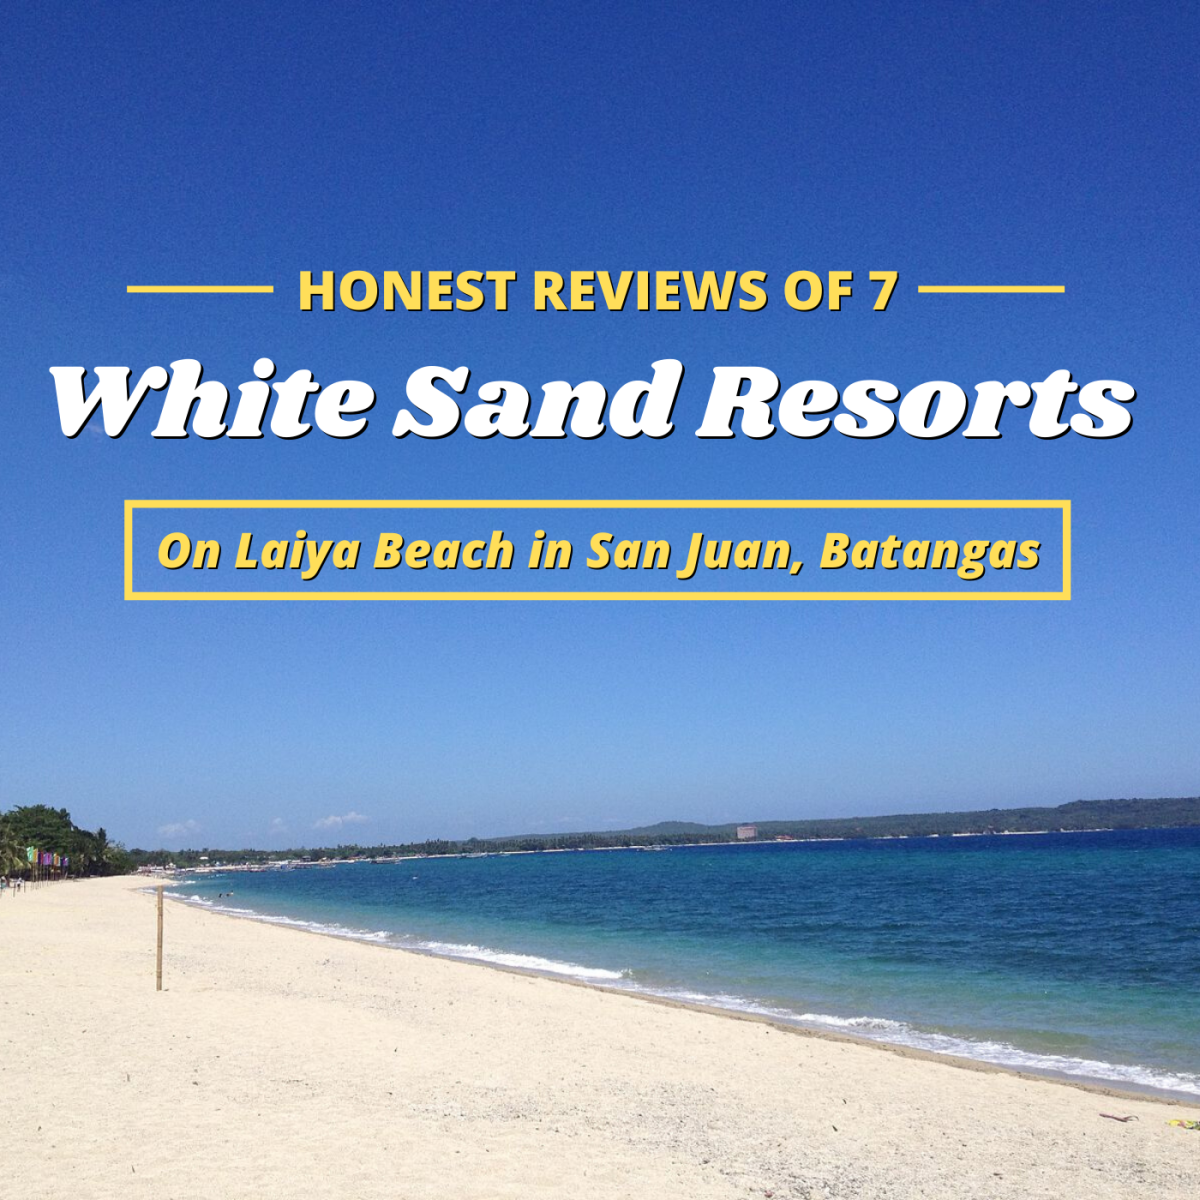 Review of White Sand Beach Resorts in Laiya, San Juan, Batangas